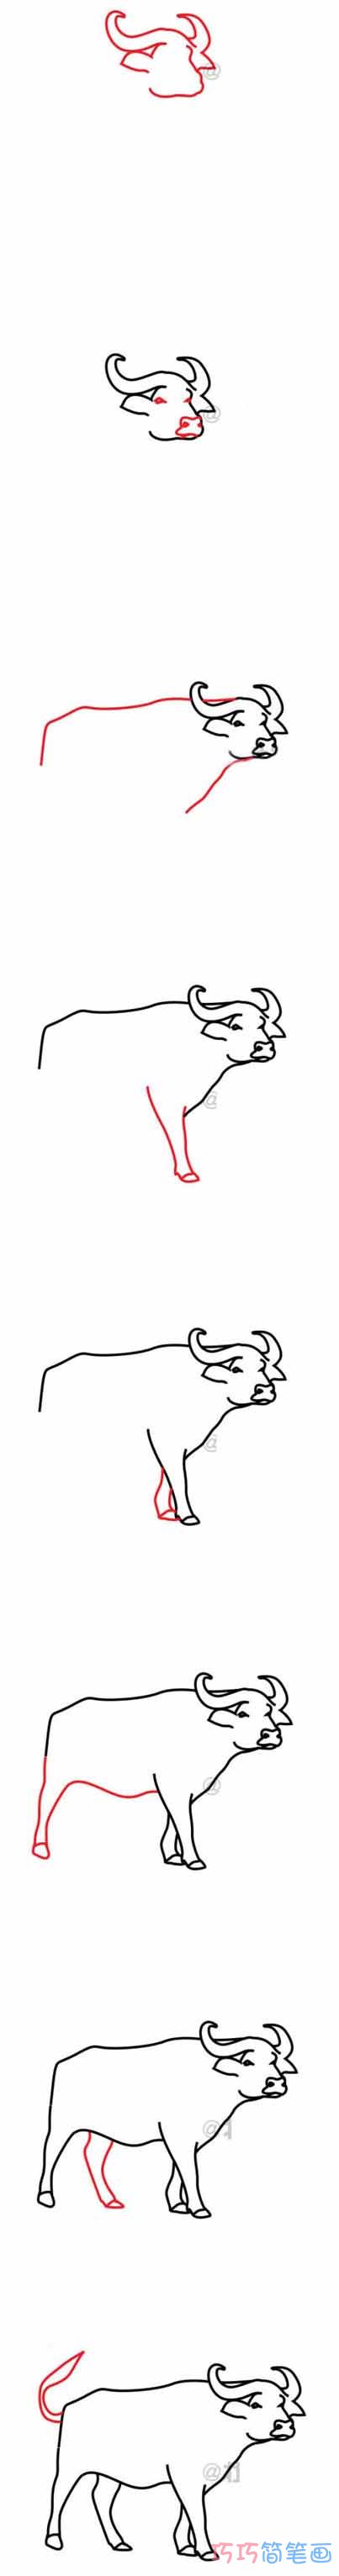 怎么画水牛手绘带步骤图 水牛简笔画图片